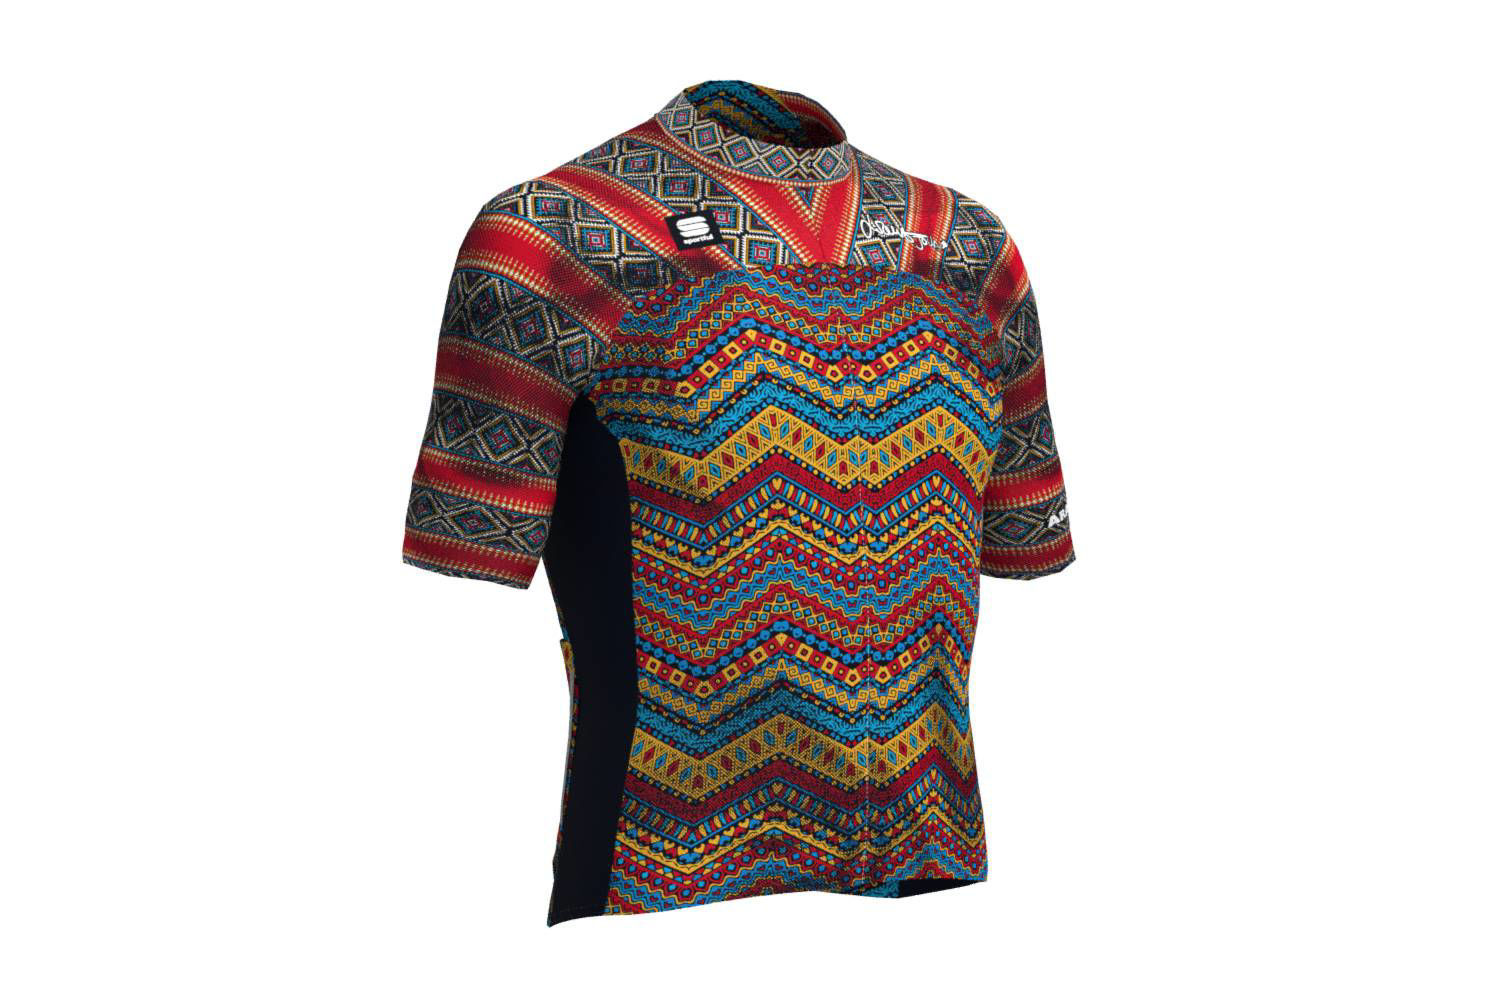 Picture of ARACATACA Jova Cycling Jersey Putumayo Sportful Limited Edition